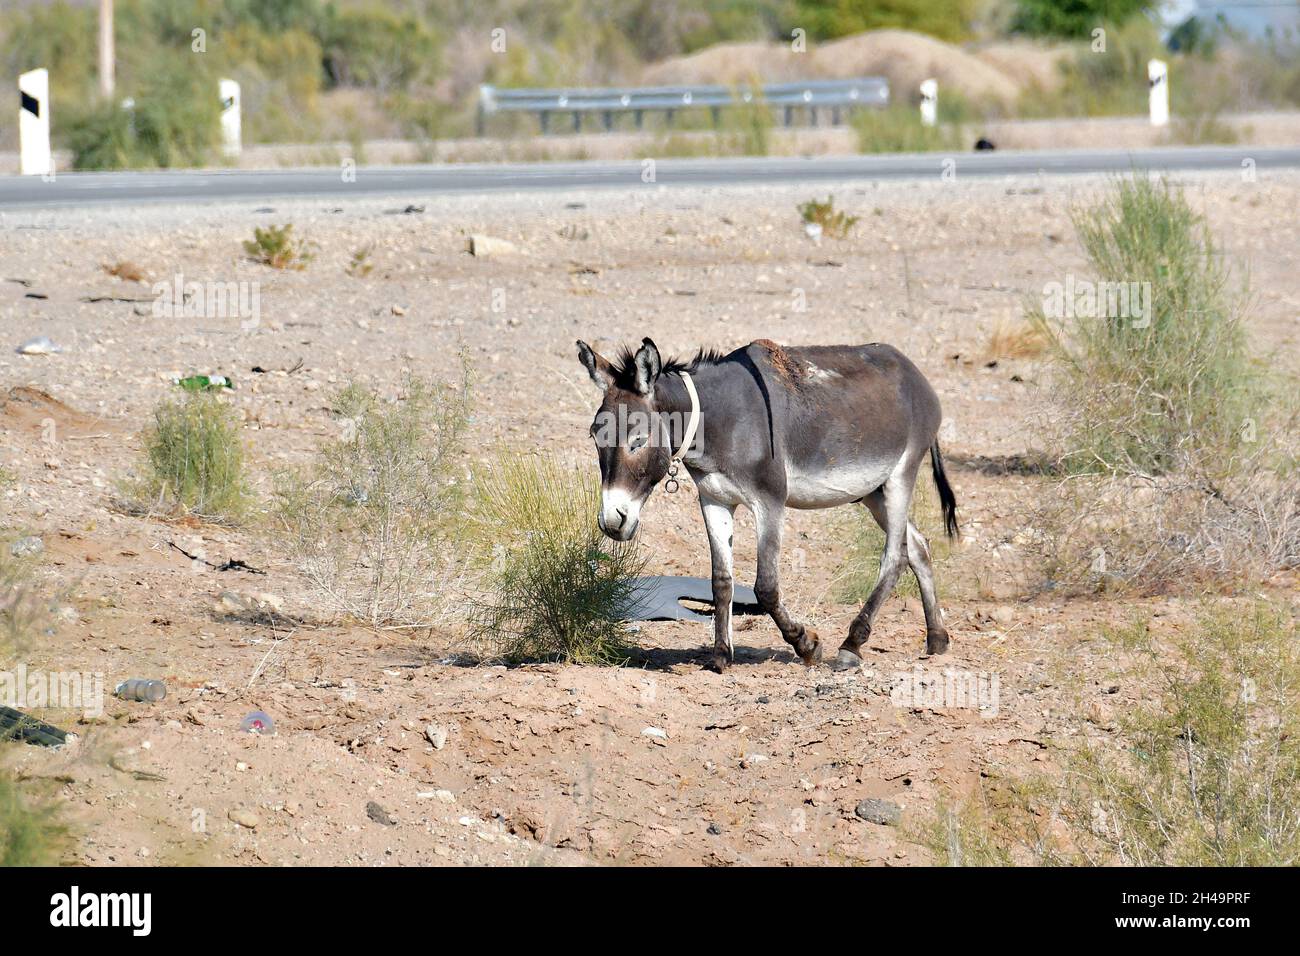 donkey, Hausesel, Equus africanus asinus, háziszamár, Kyzylkum Desert, Uzbekistan, Central Asia Stock Photo